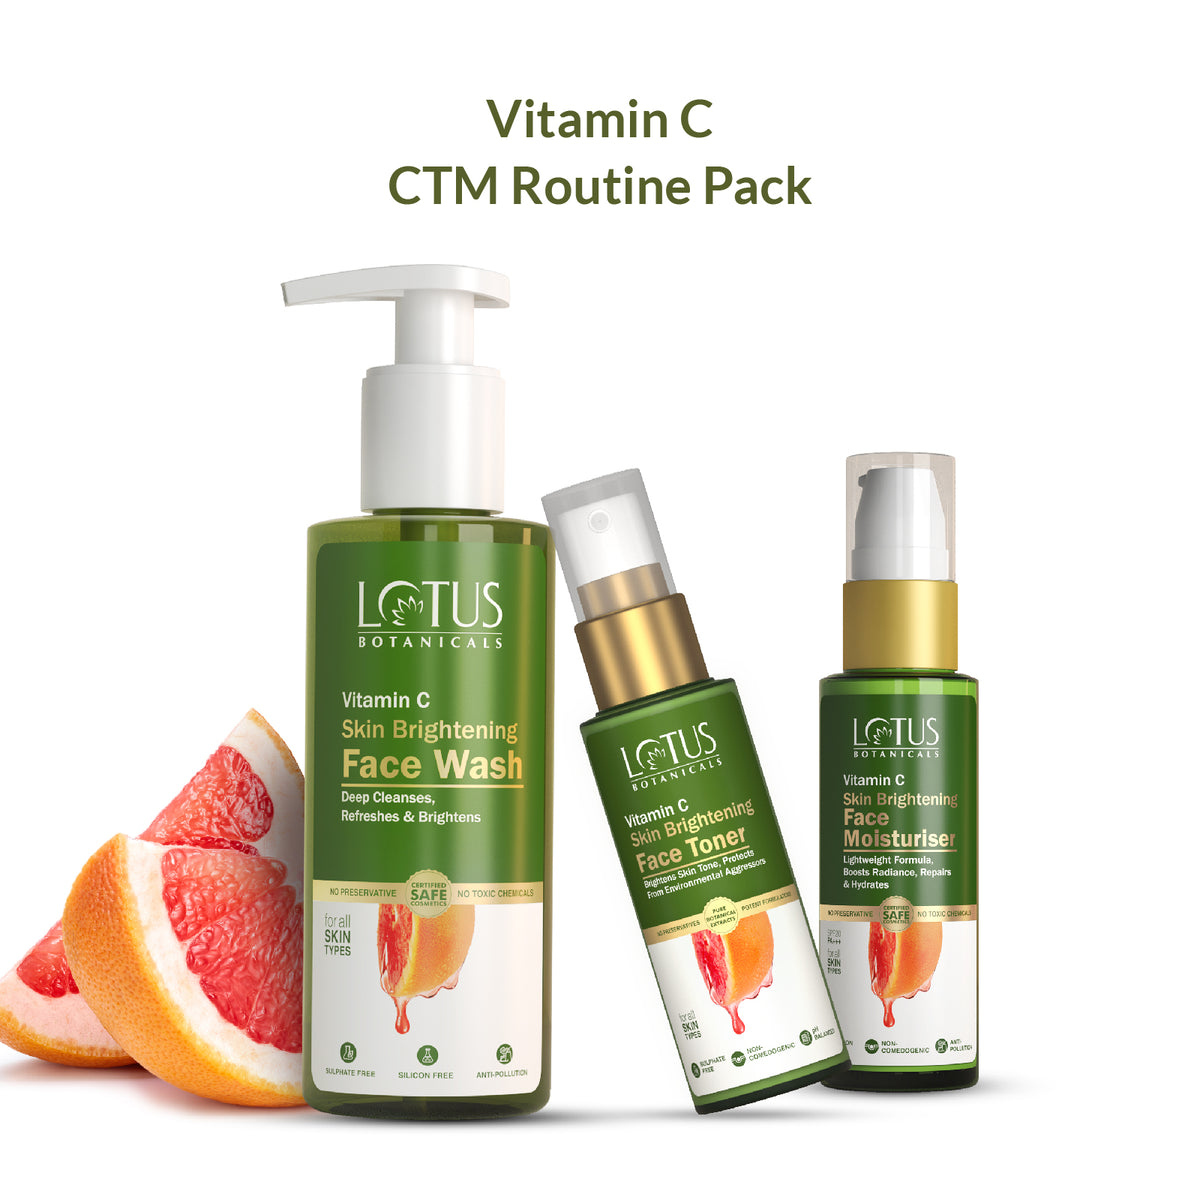 Lotus Botanicals Vitamin C CTM Routine Pack